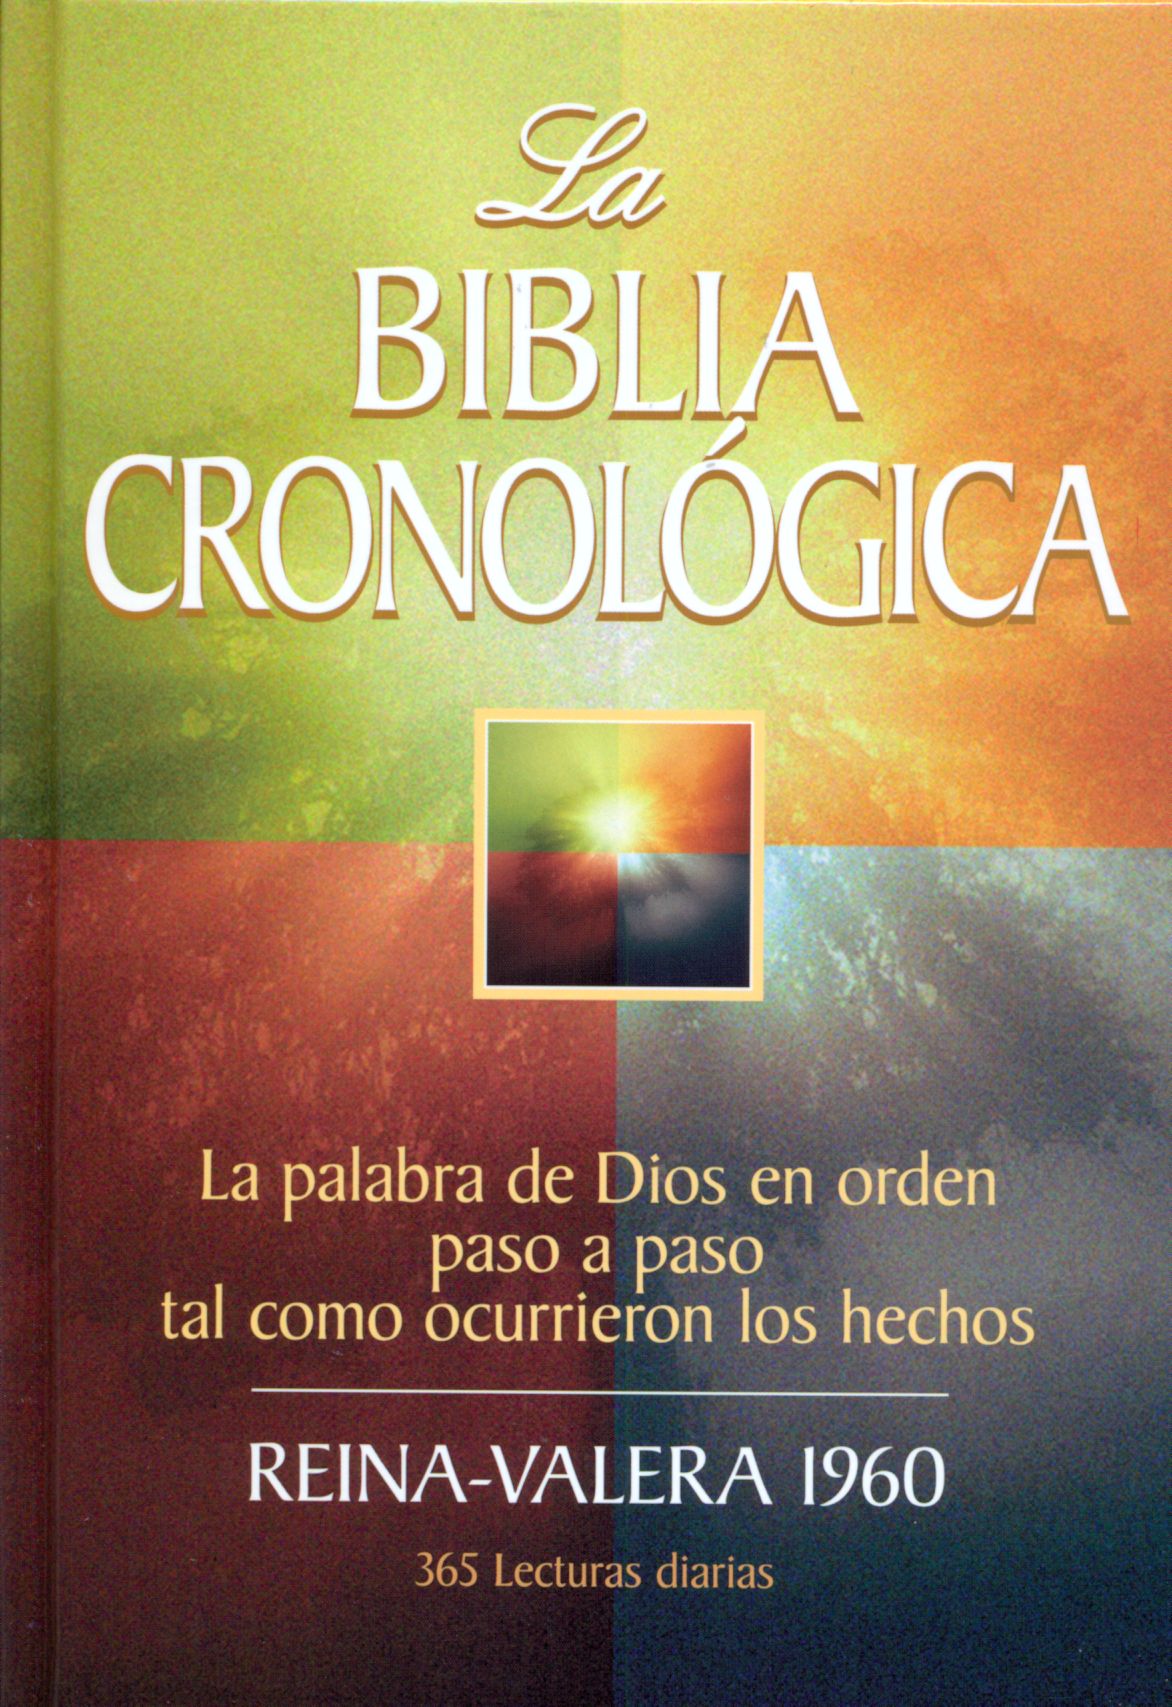 BIBLIA CRONOLÒGICA, BIBLE D'ETUDE, ESPAGNOL, RVR 1960,RIGIDE ILLUSTREE